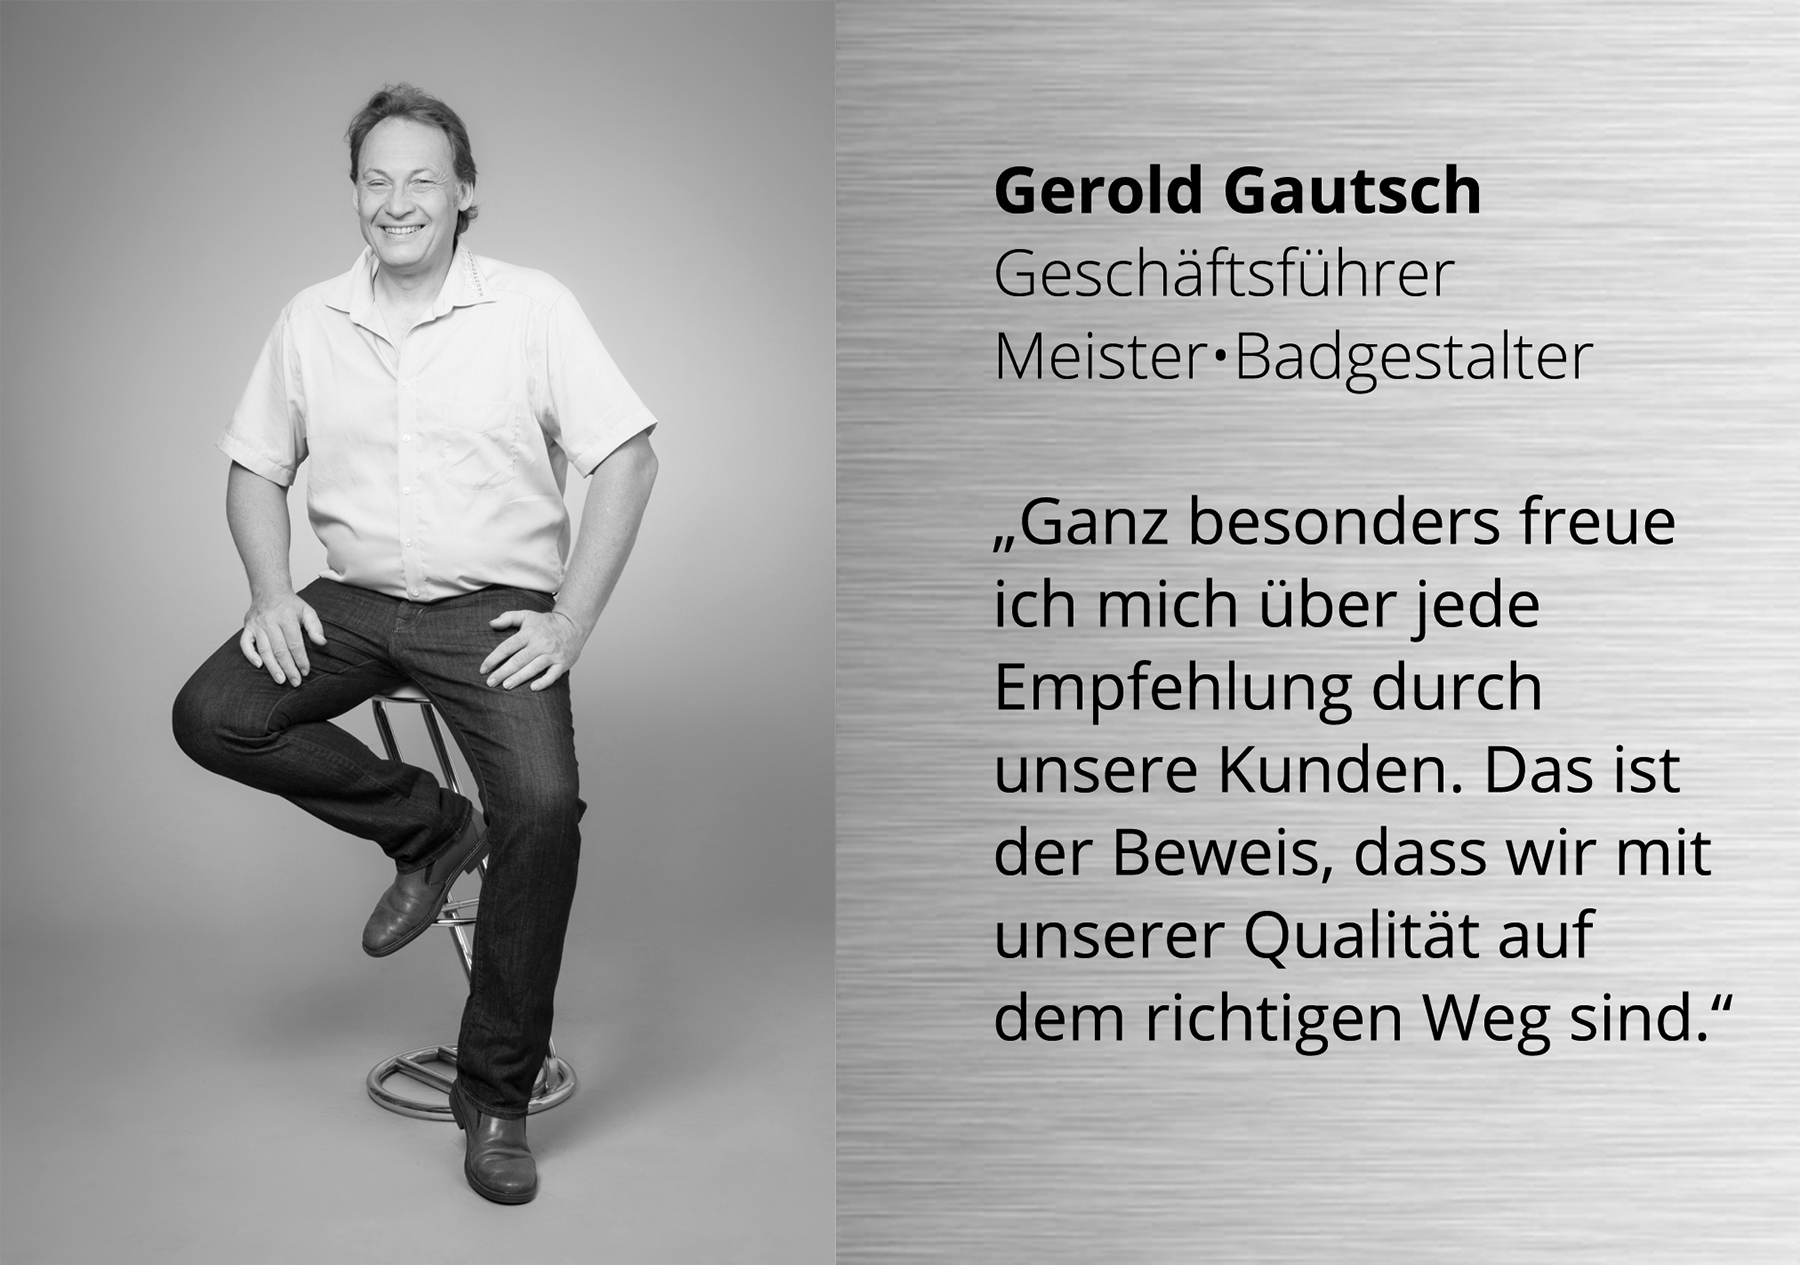 Gerold Gautsch